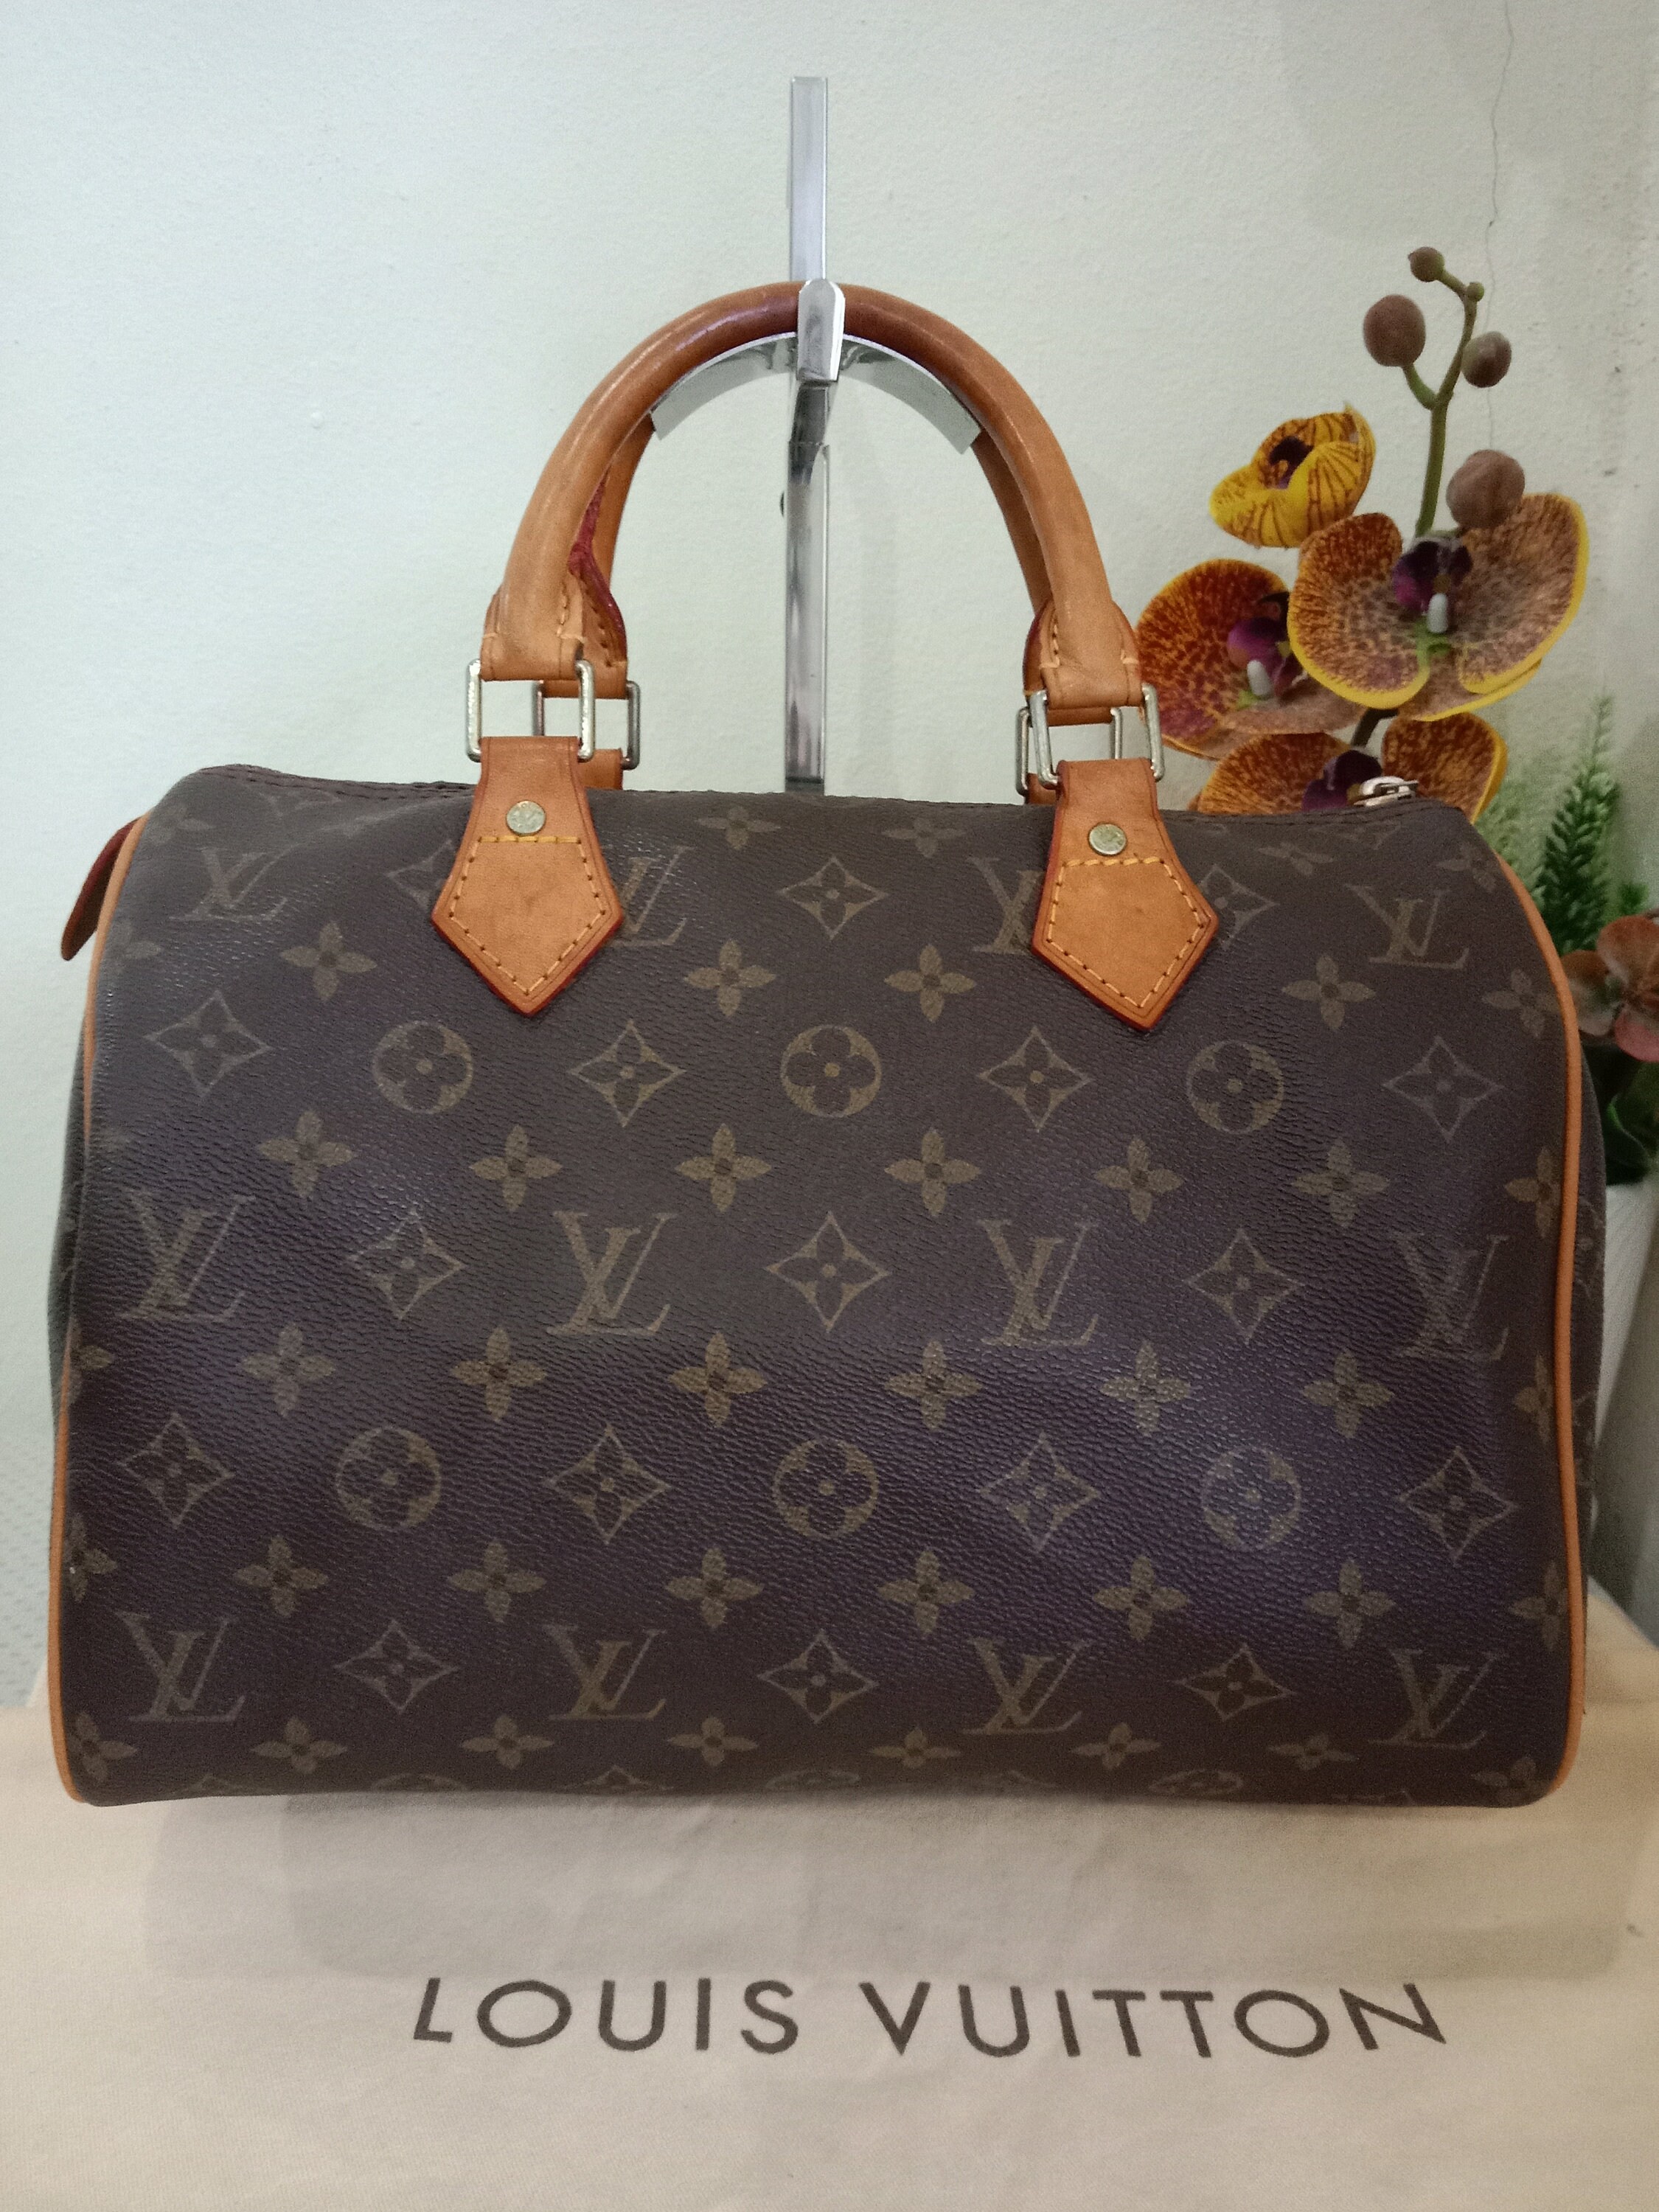 Louis Vuitton Handbag Shoulder Strap, PNG, 512x512px, Louis Vuitton, Bag,  Beige, Black, Brand Download Free